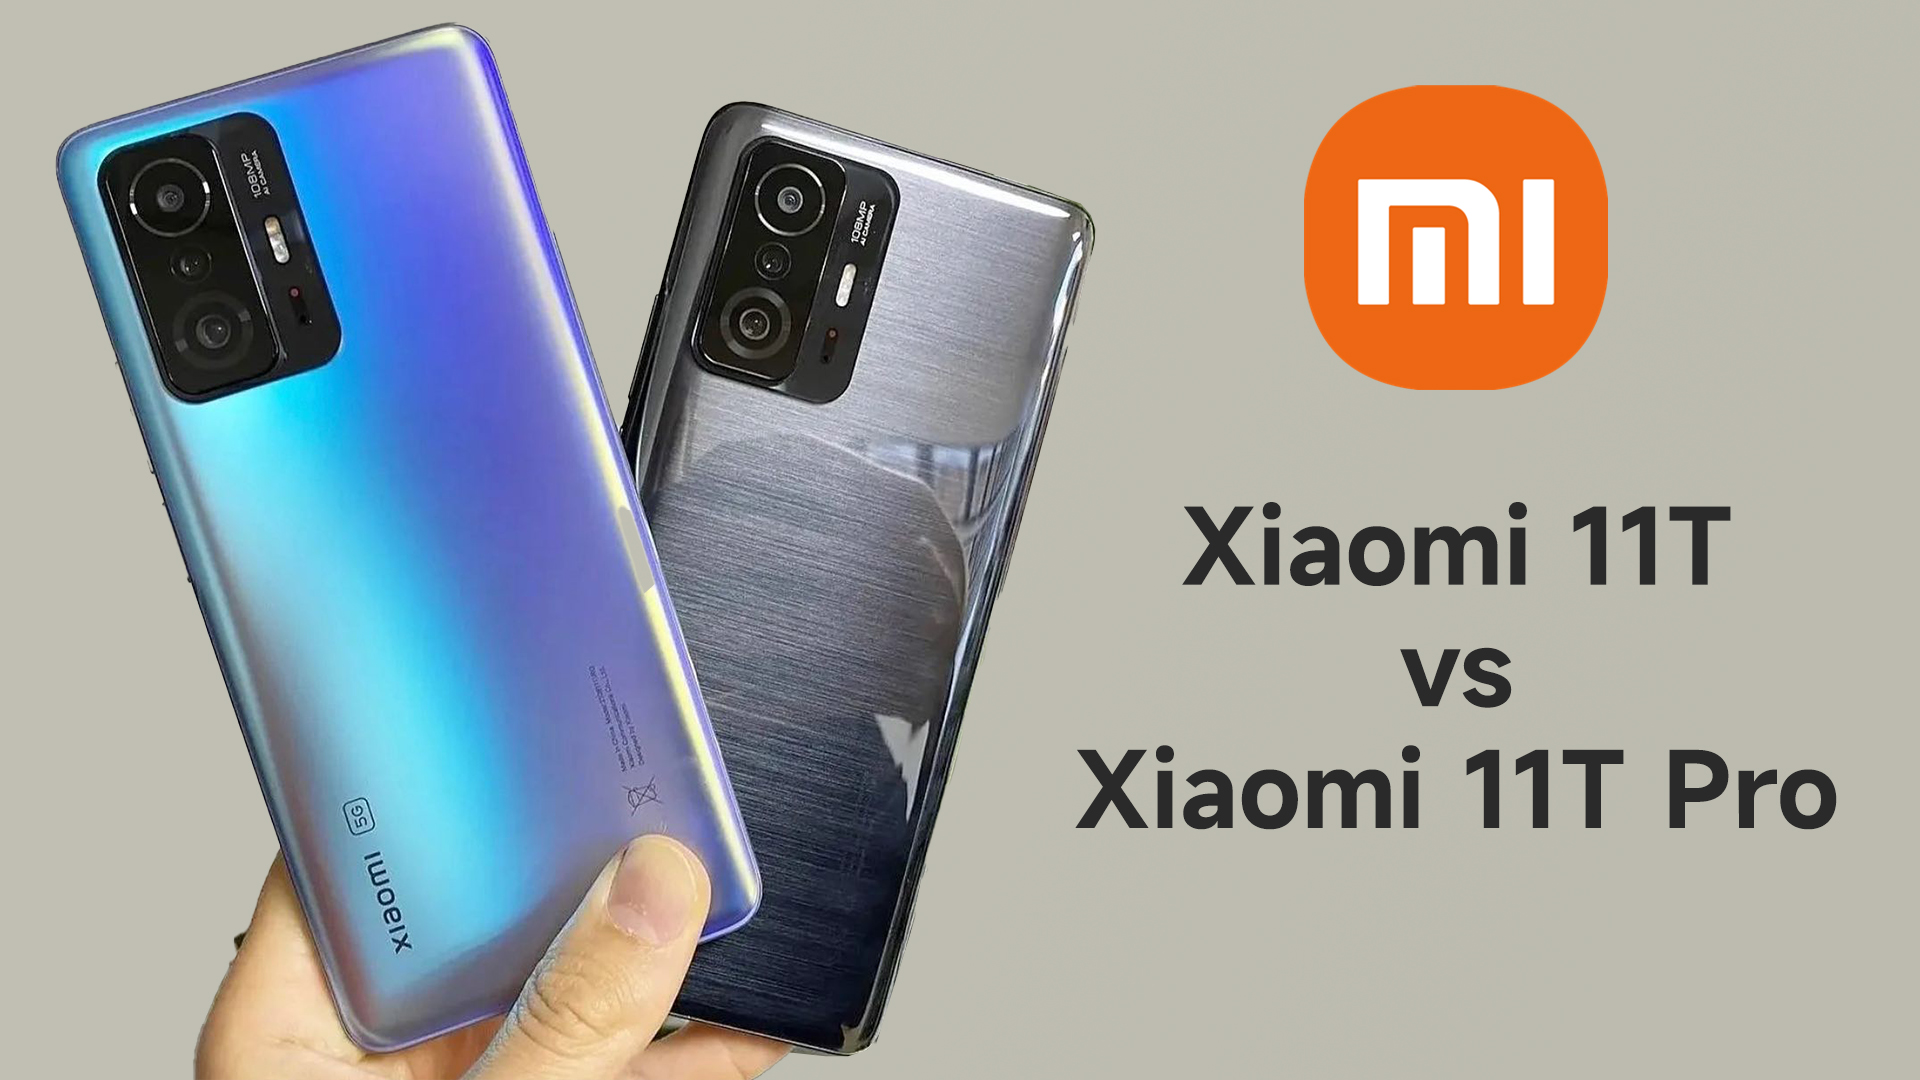 Xiaomi 11T vs Xiaomi 11T Pro Comparison Pro is for professional